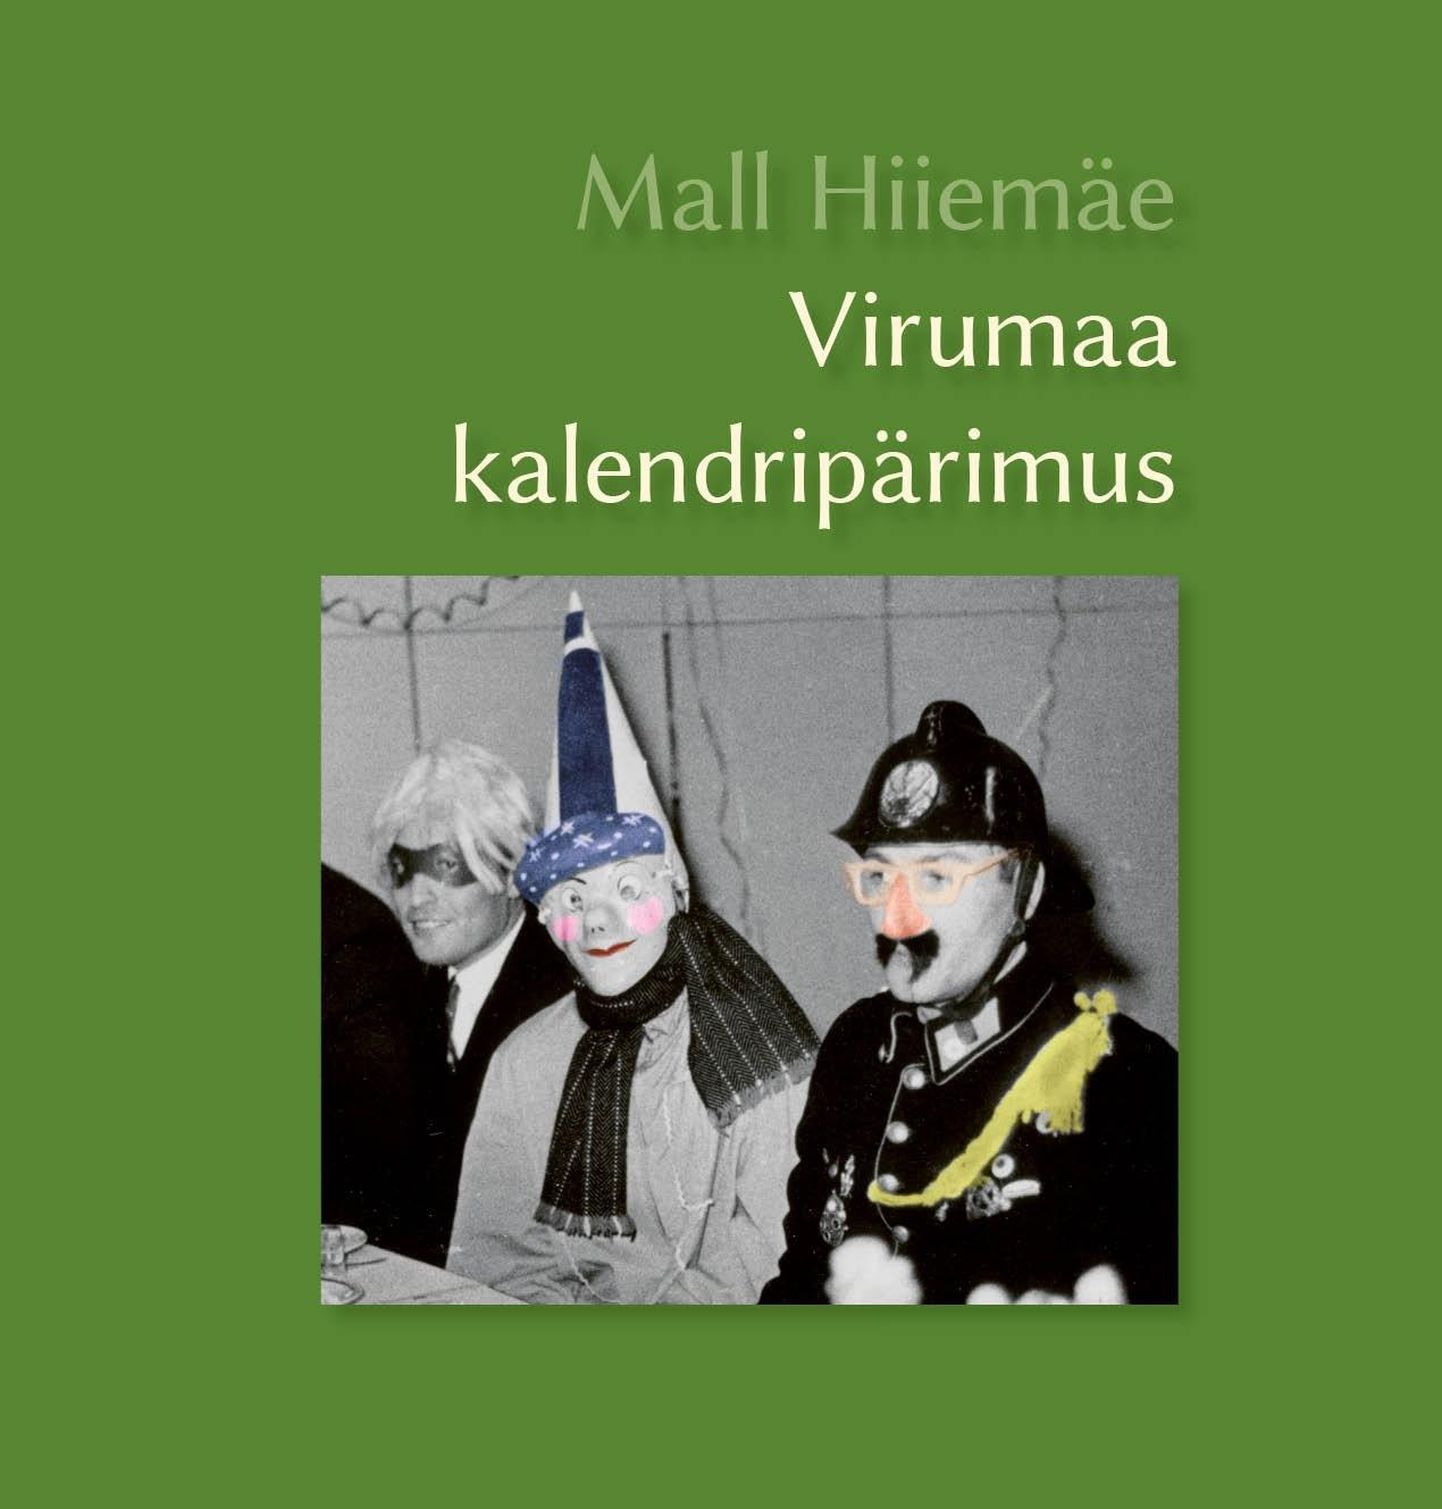 Mall Hiiemäe “Virumaa kalendripärimus”. EKM Teaduskirjastus ja Viru instituut, Tartu–Rakvere 2018, 281 lk.